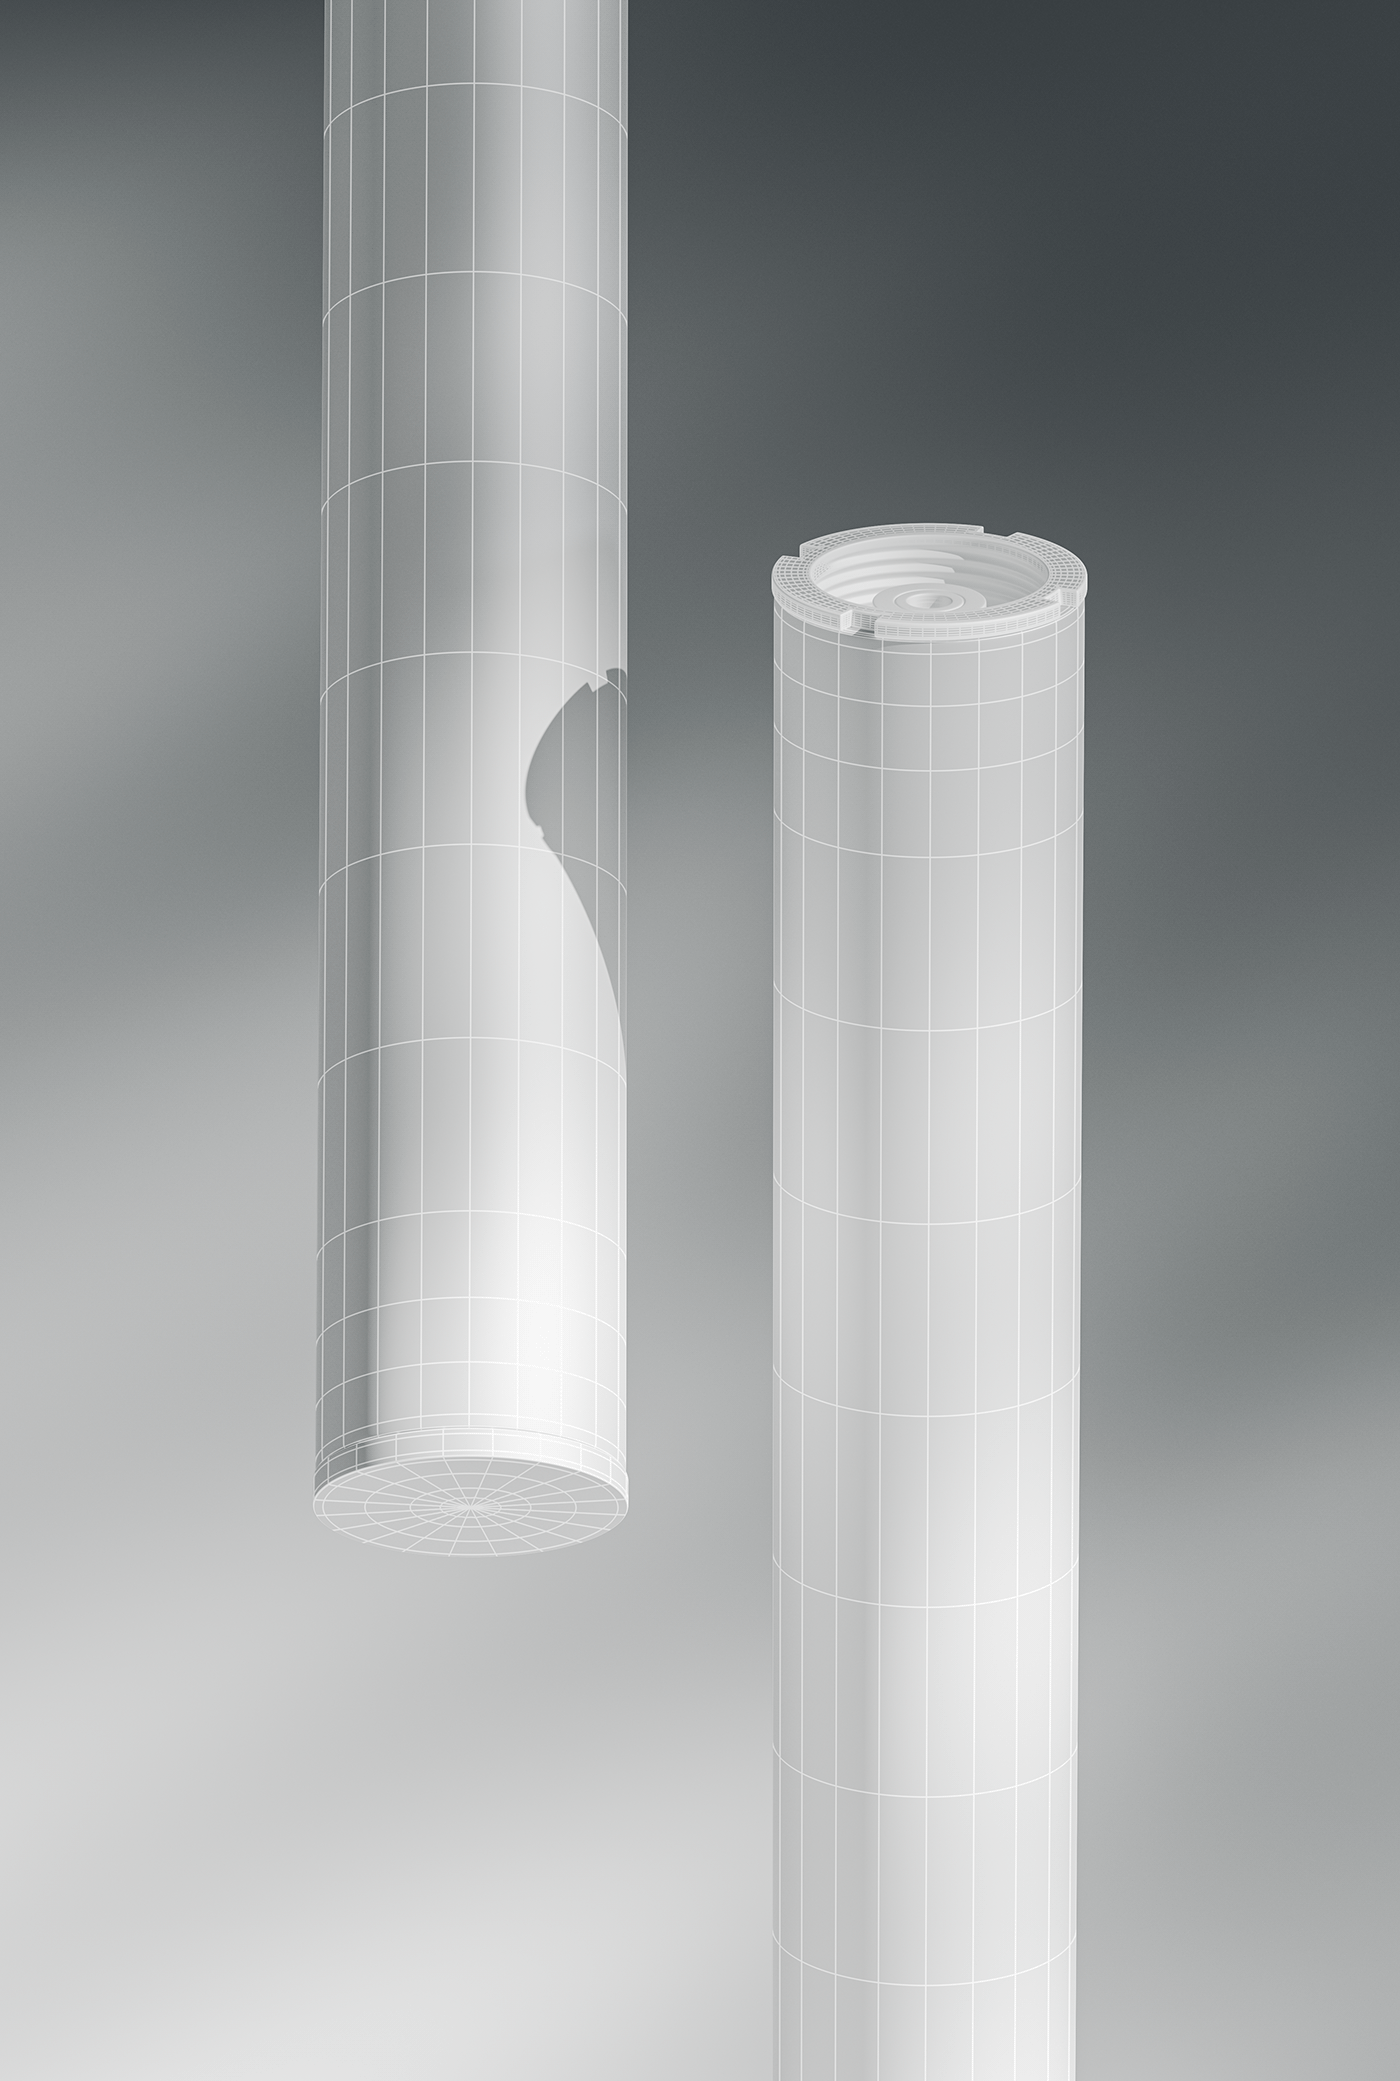 3d modeling Autodesk CGI industrial design  inhaler Maya product design  Product Rendering redshift substance